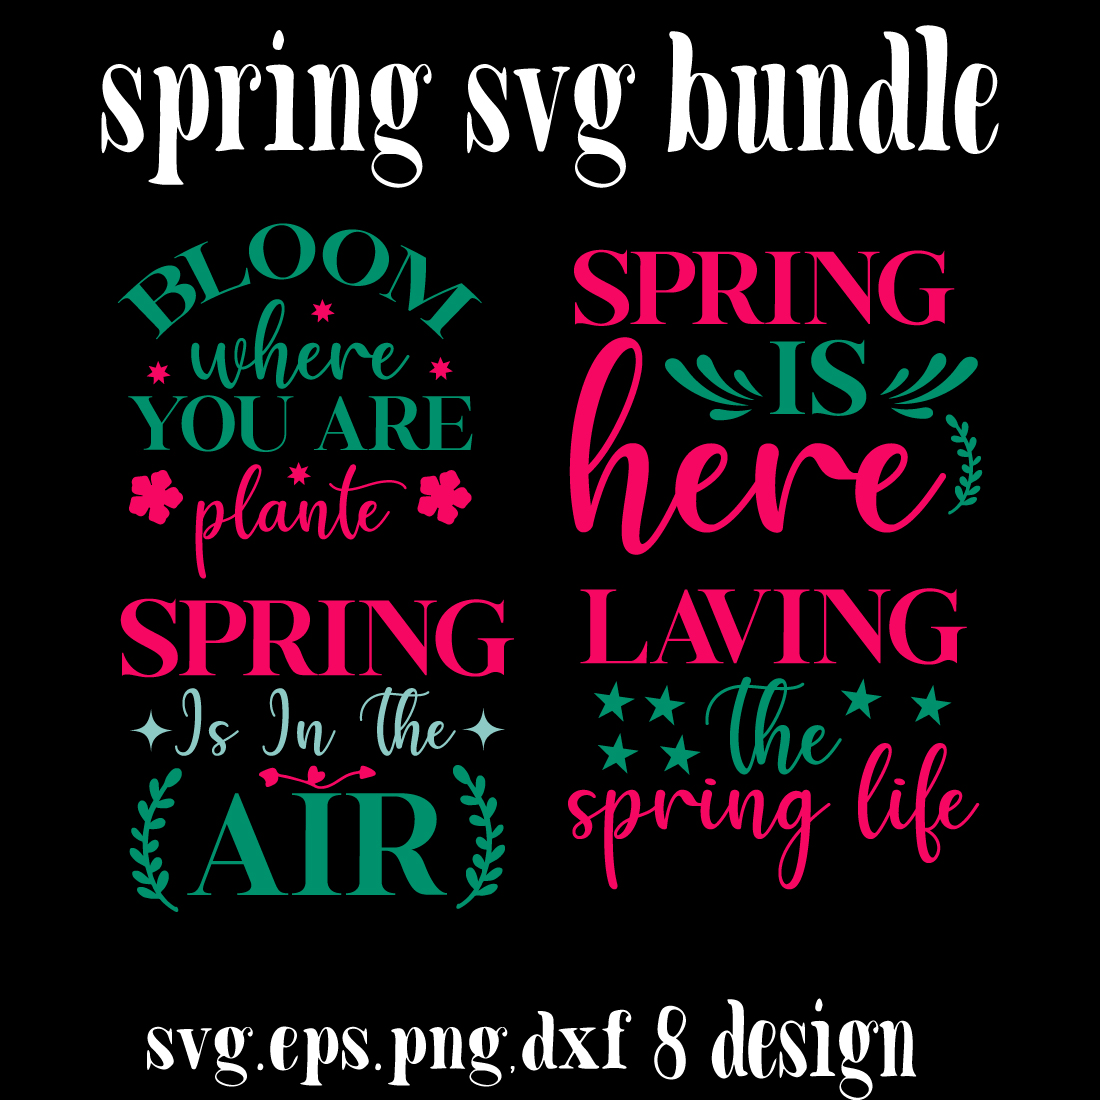 spring svg bundle preview image.